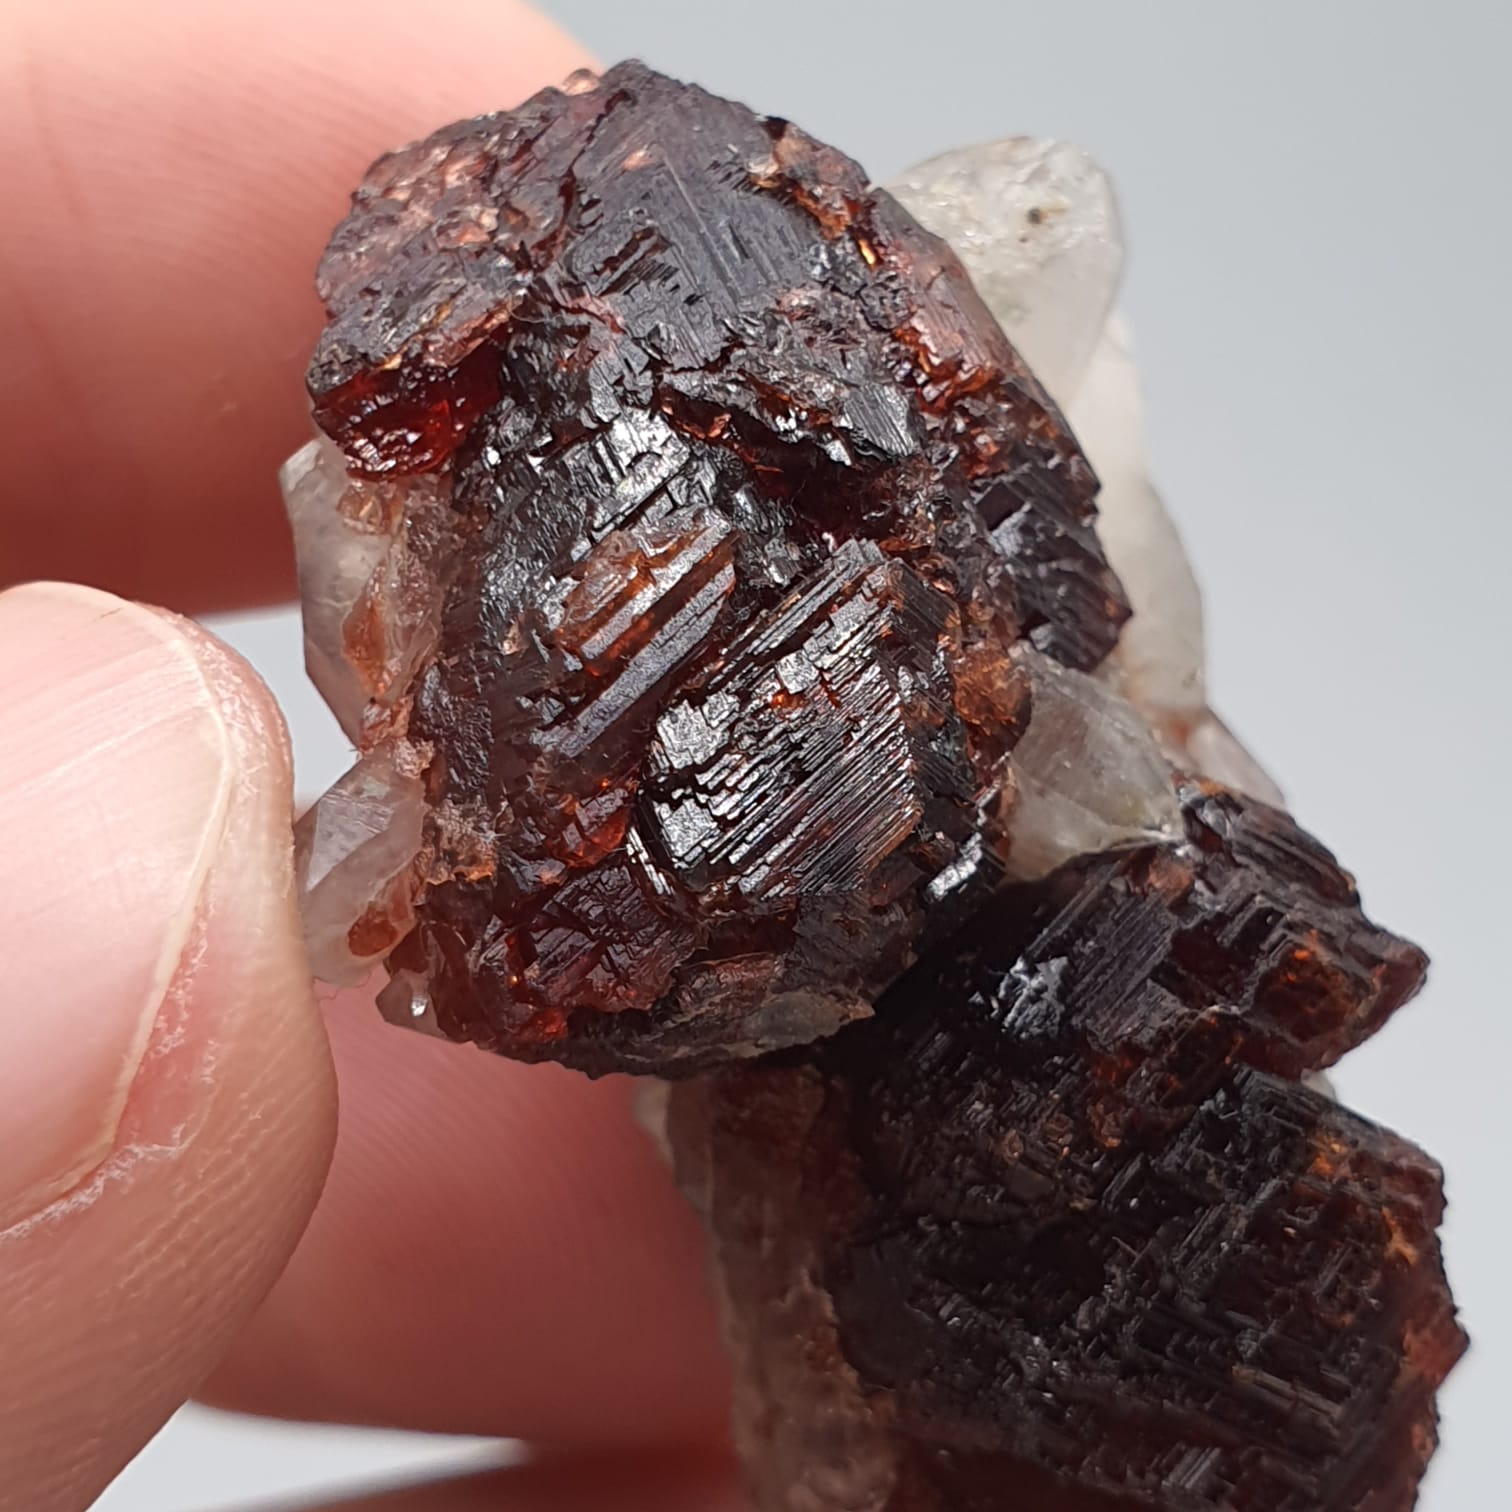 Red Spessartine Garnet Crystals On Quartz